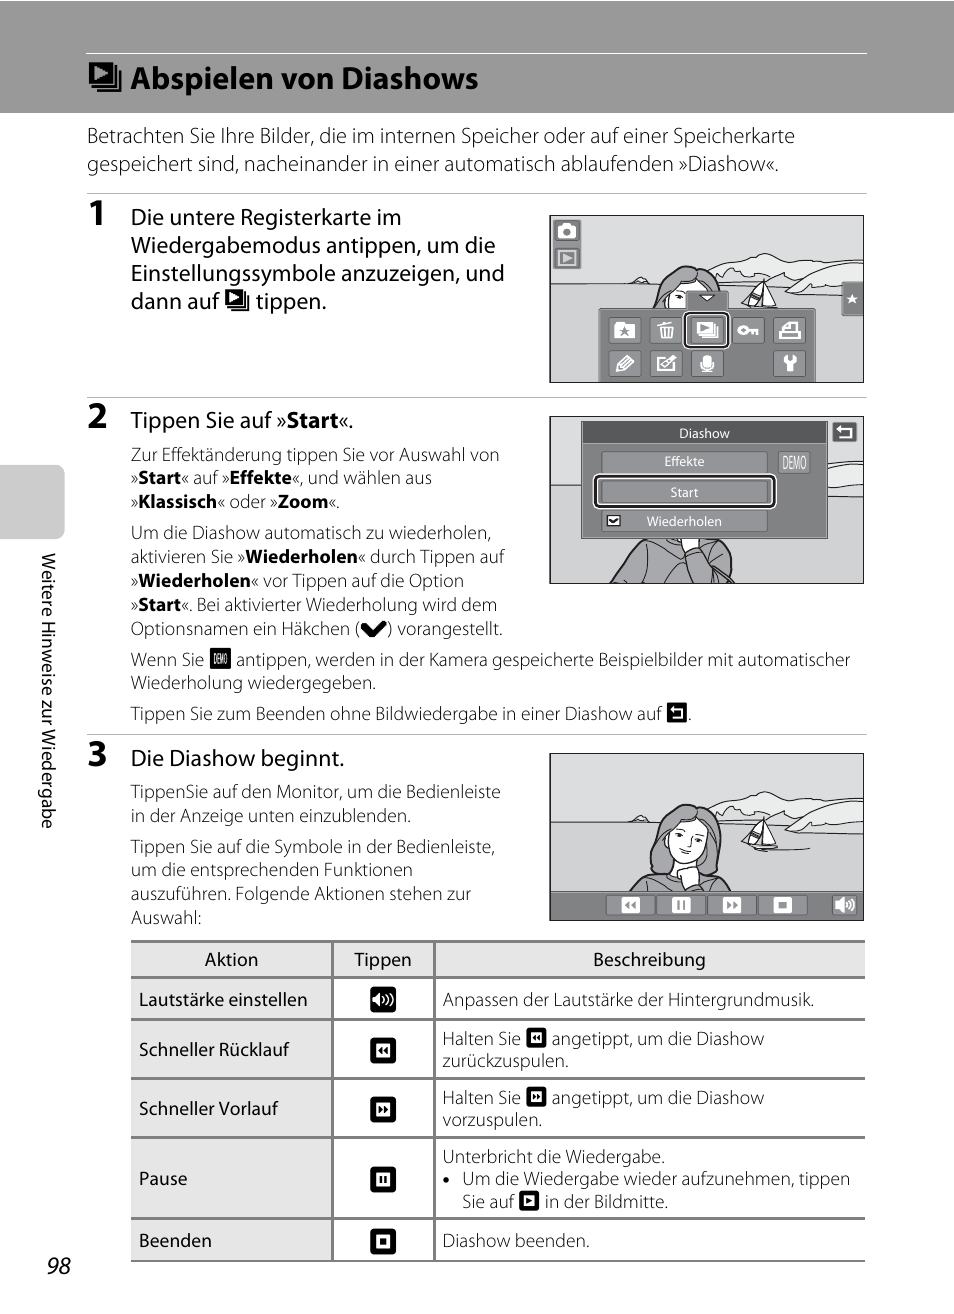 Abspielen von diashows, B abspielen von diashows | Nikon Coolpix S80 Benutzerhandbuch | Seite 110 / 204